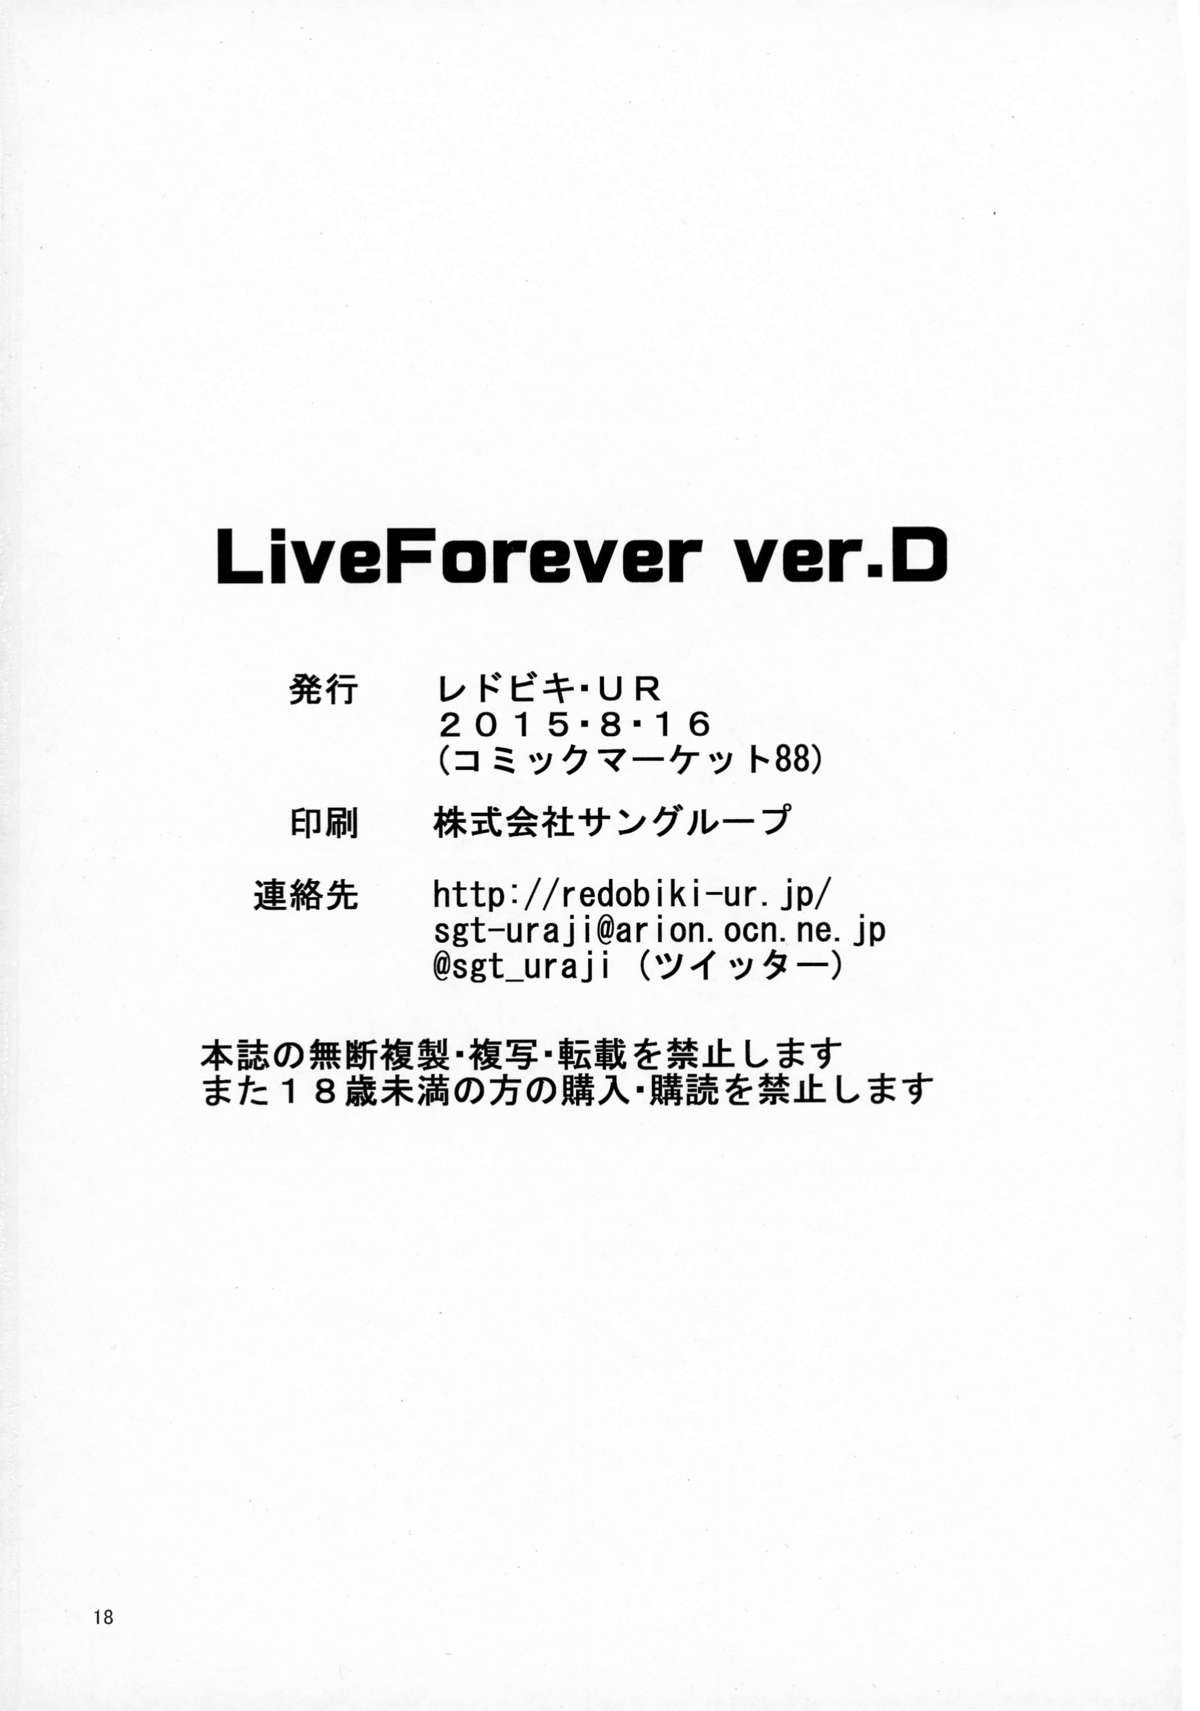 LiveForever ver.D